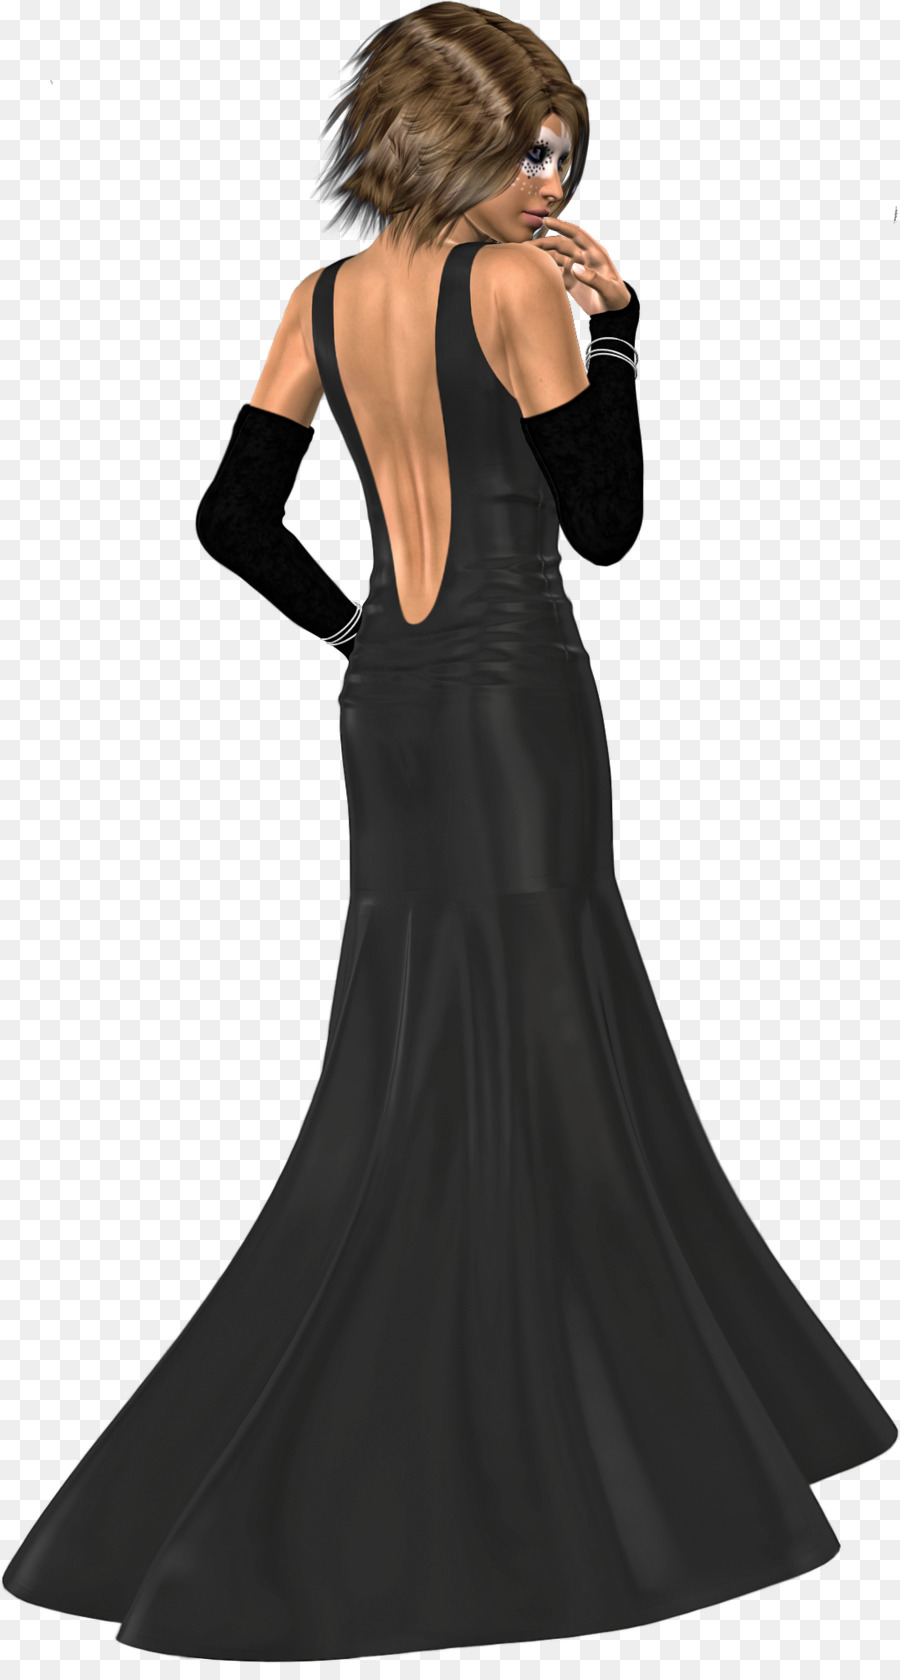 Dress Woman DeviantArt Elegance - simple and elegant png download - 900*1664 - Free Transparent  png Download.